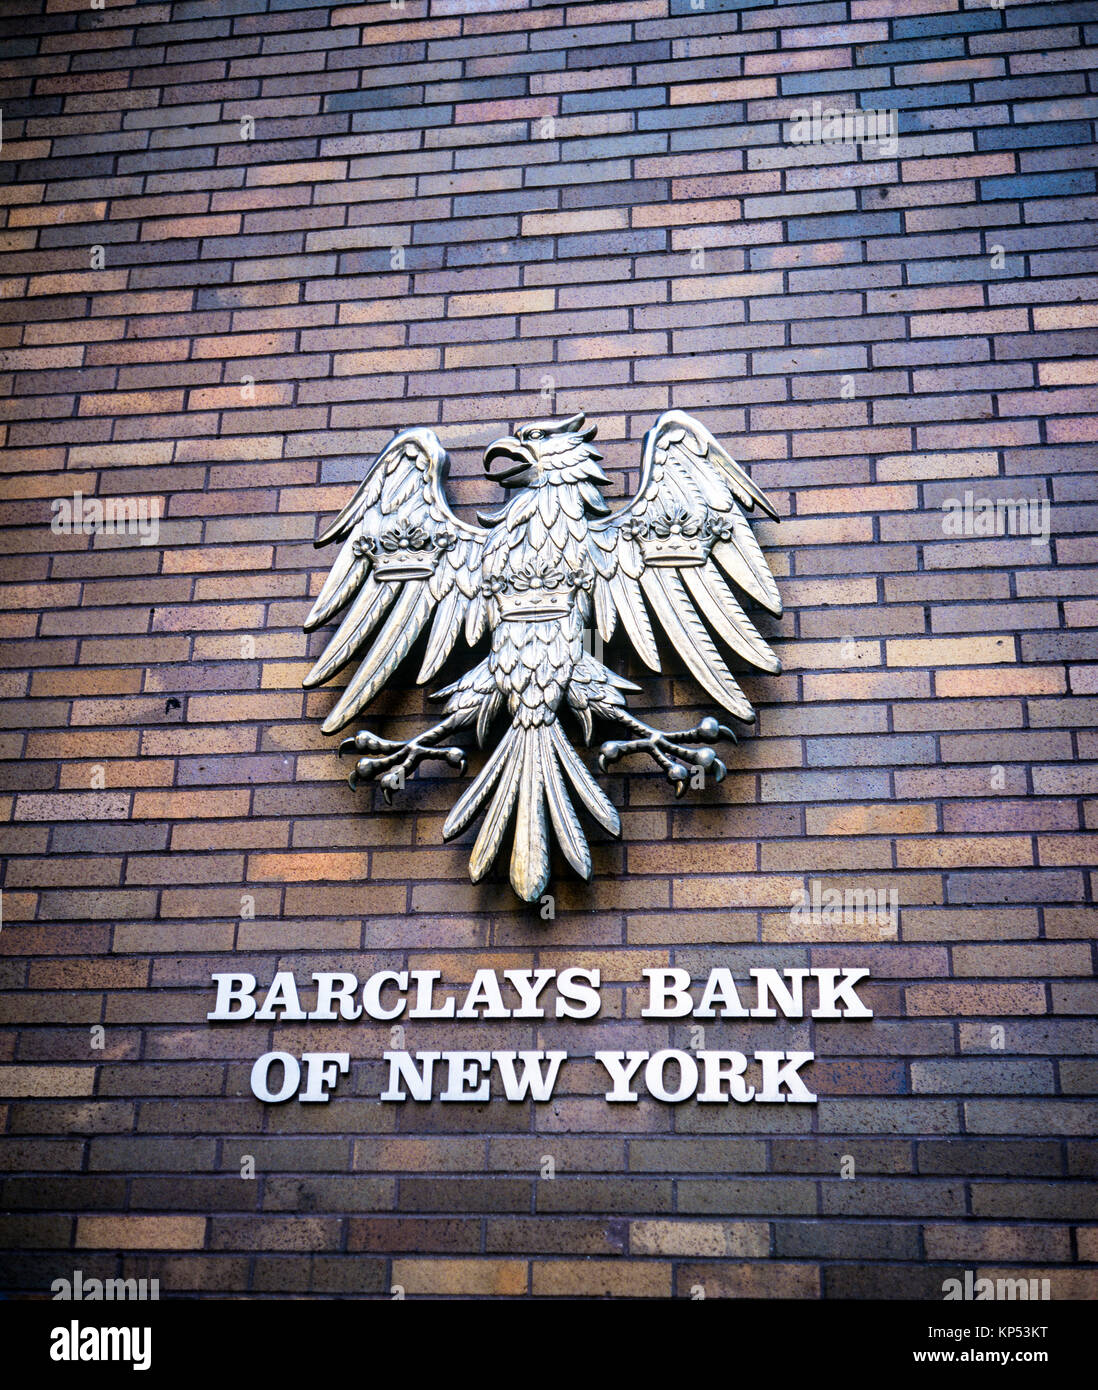 May 1982,New York,Barclays bank of New York logo,spread eagle on bricks wall,Park Avenue,Manhattan,New York City,NY,NYC,USA, Stock Photo